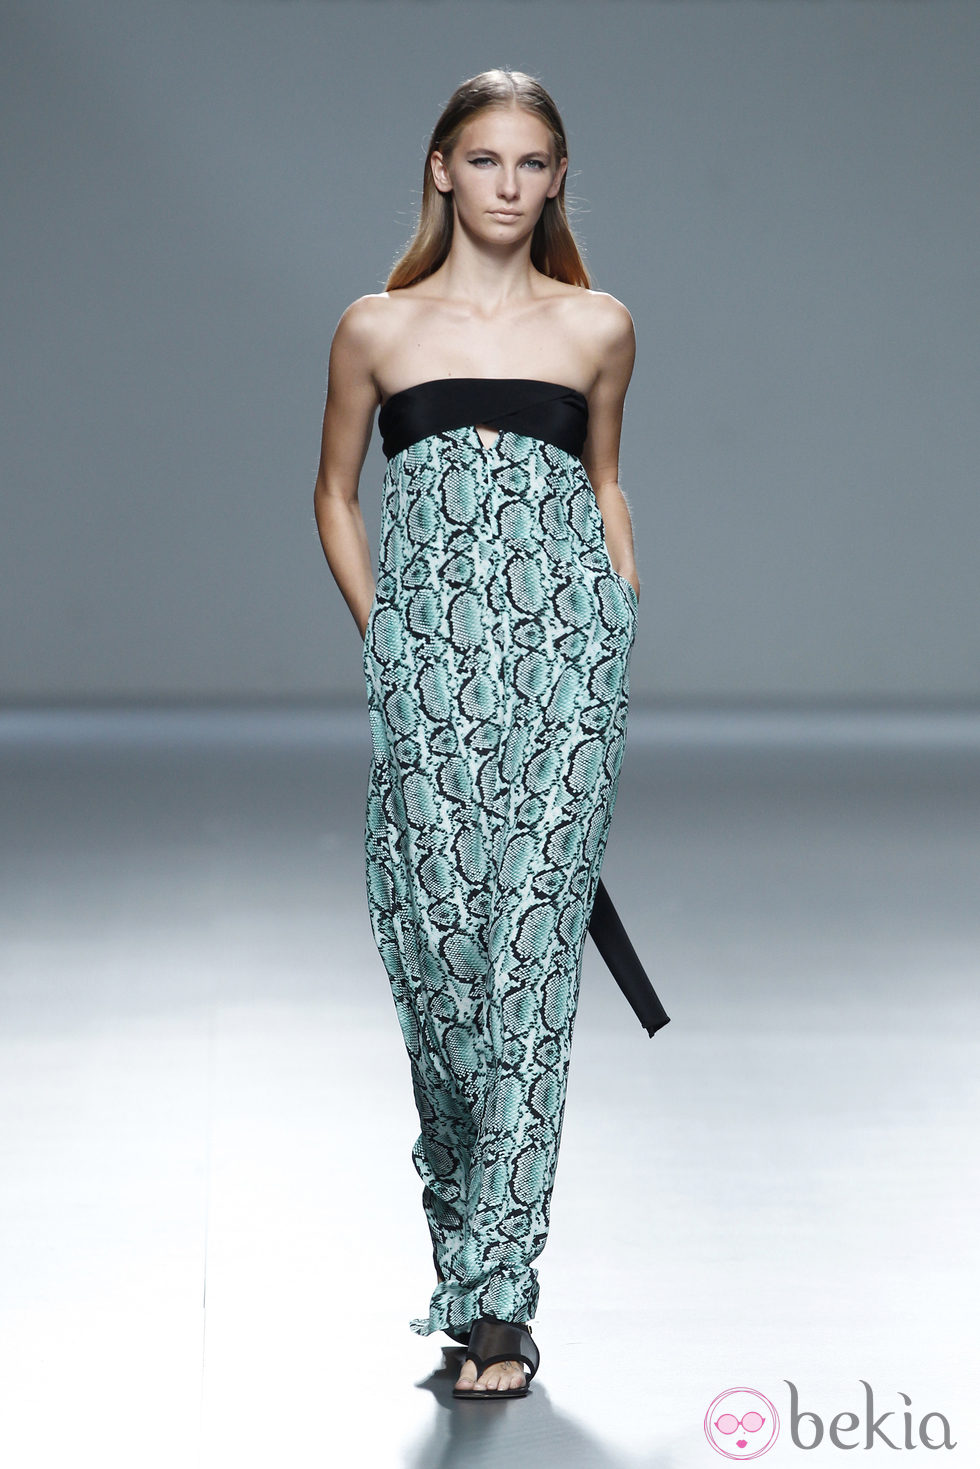 Vestido print animal de la colección primavera/verano 2014 de Ángel Schlesser en Madrid Fashion Week